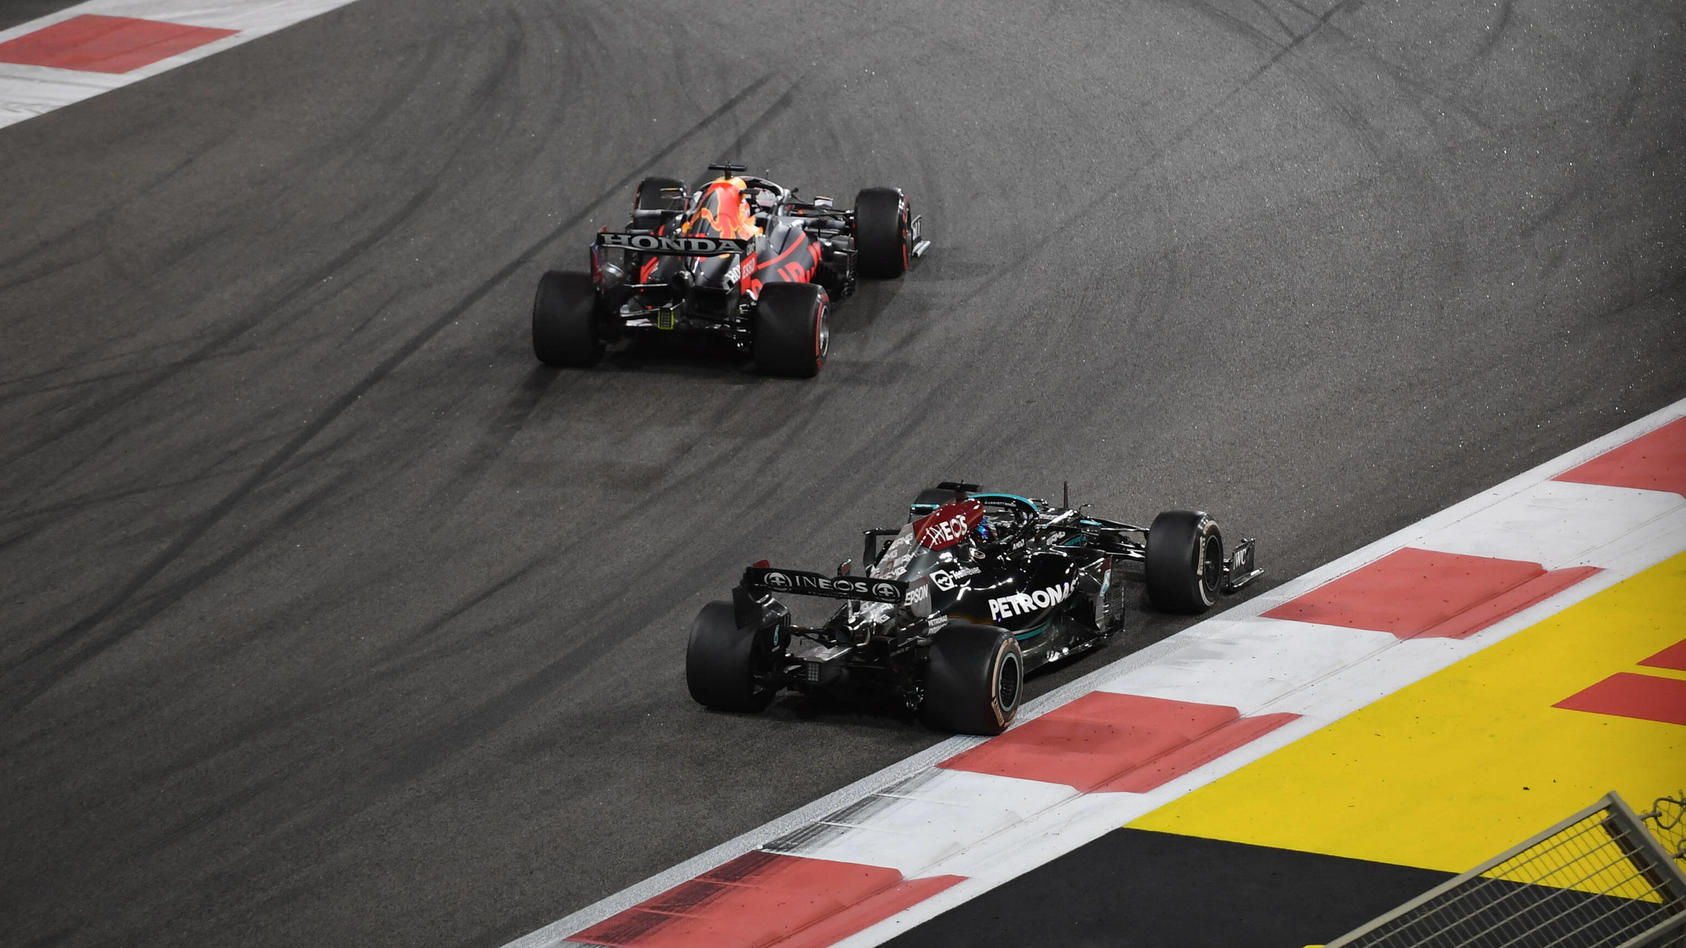 Formel 1 Grand Prix von Spanien live im TV oder im Live Stream sehen